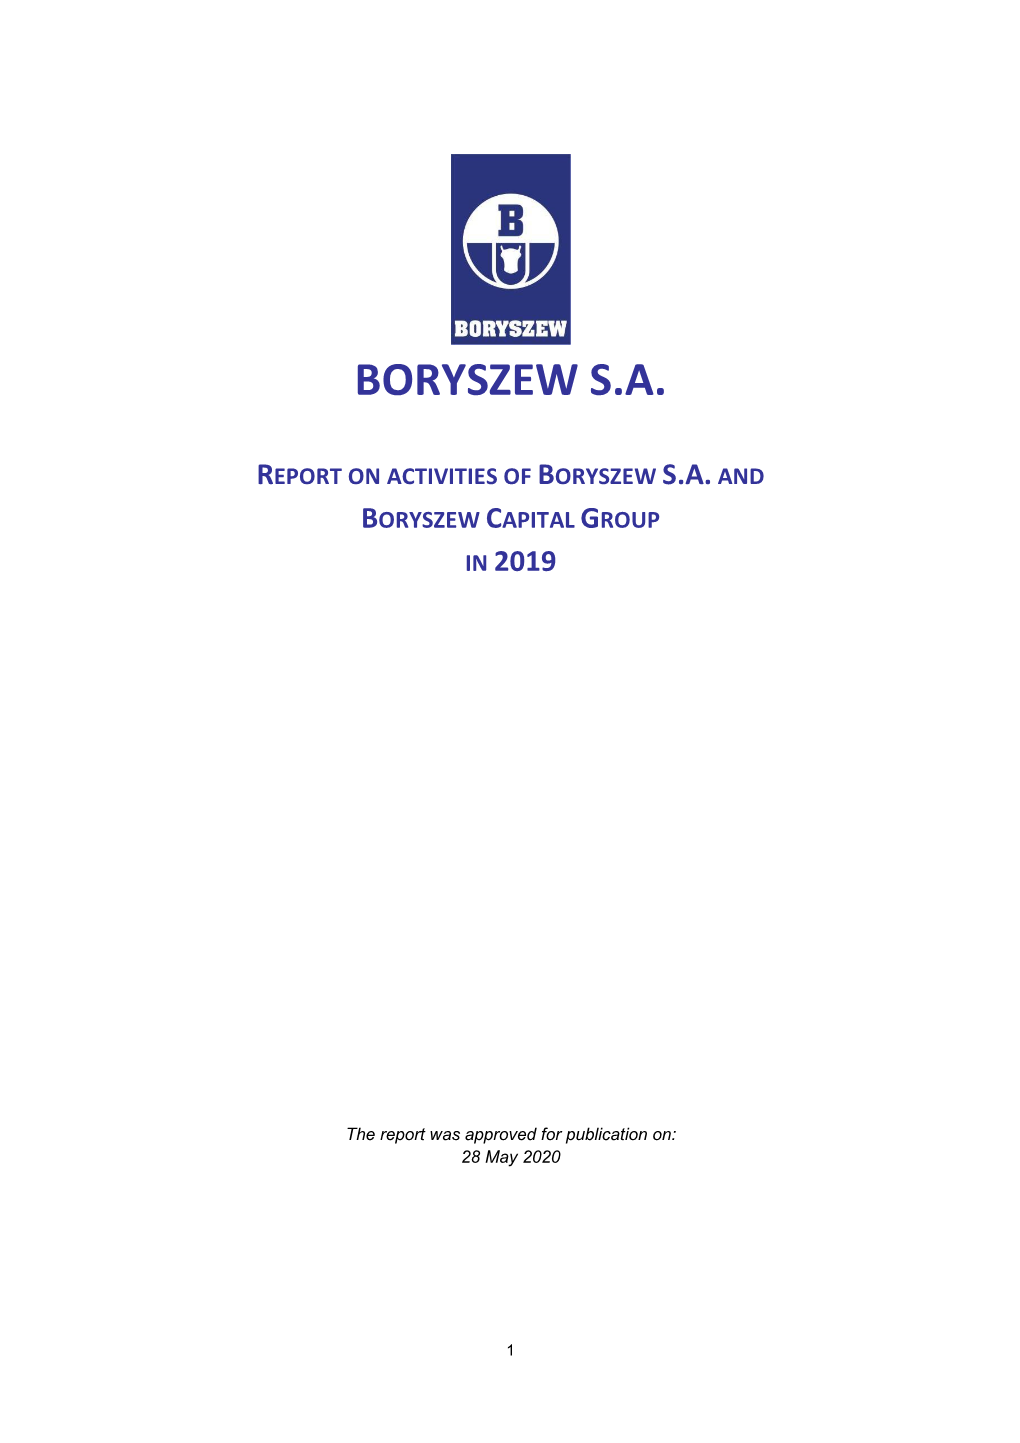 Boryszew S.A